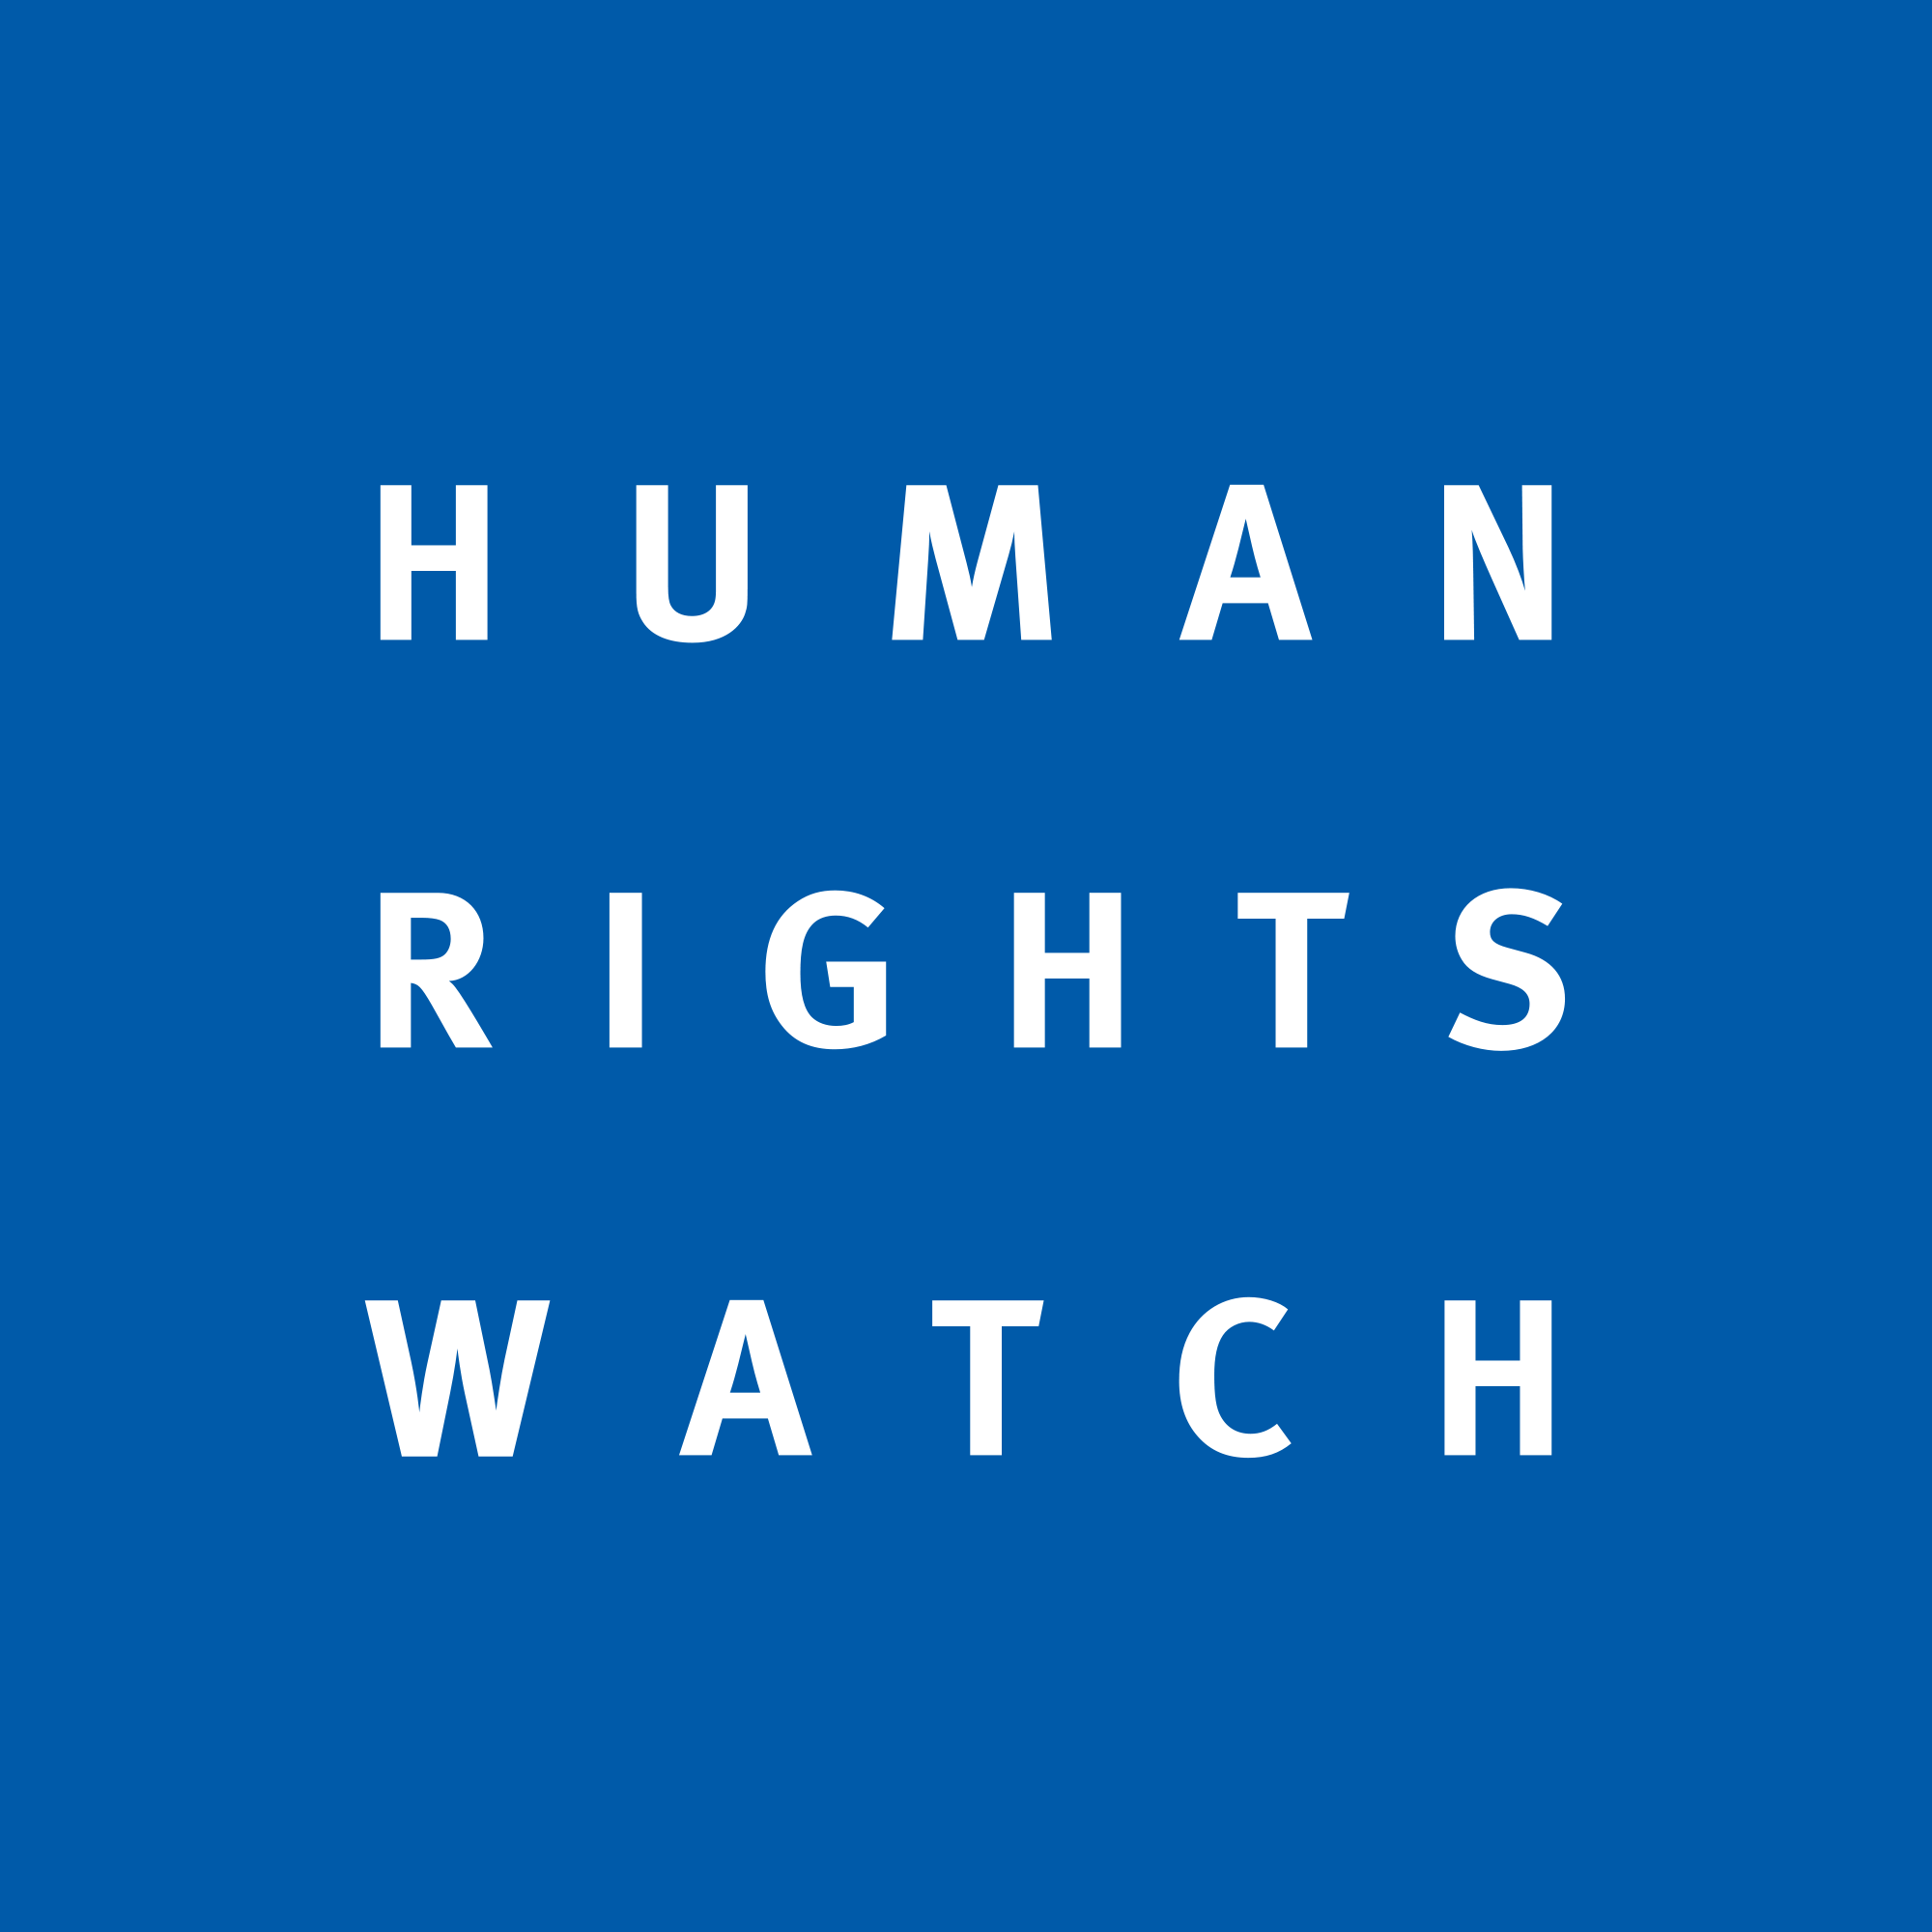 HRW Slams EU Over Hungary's Situation